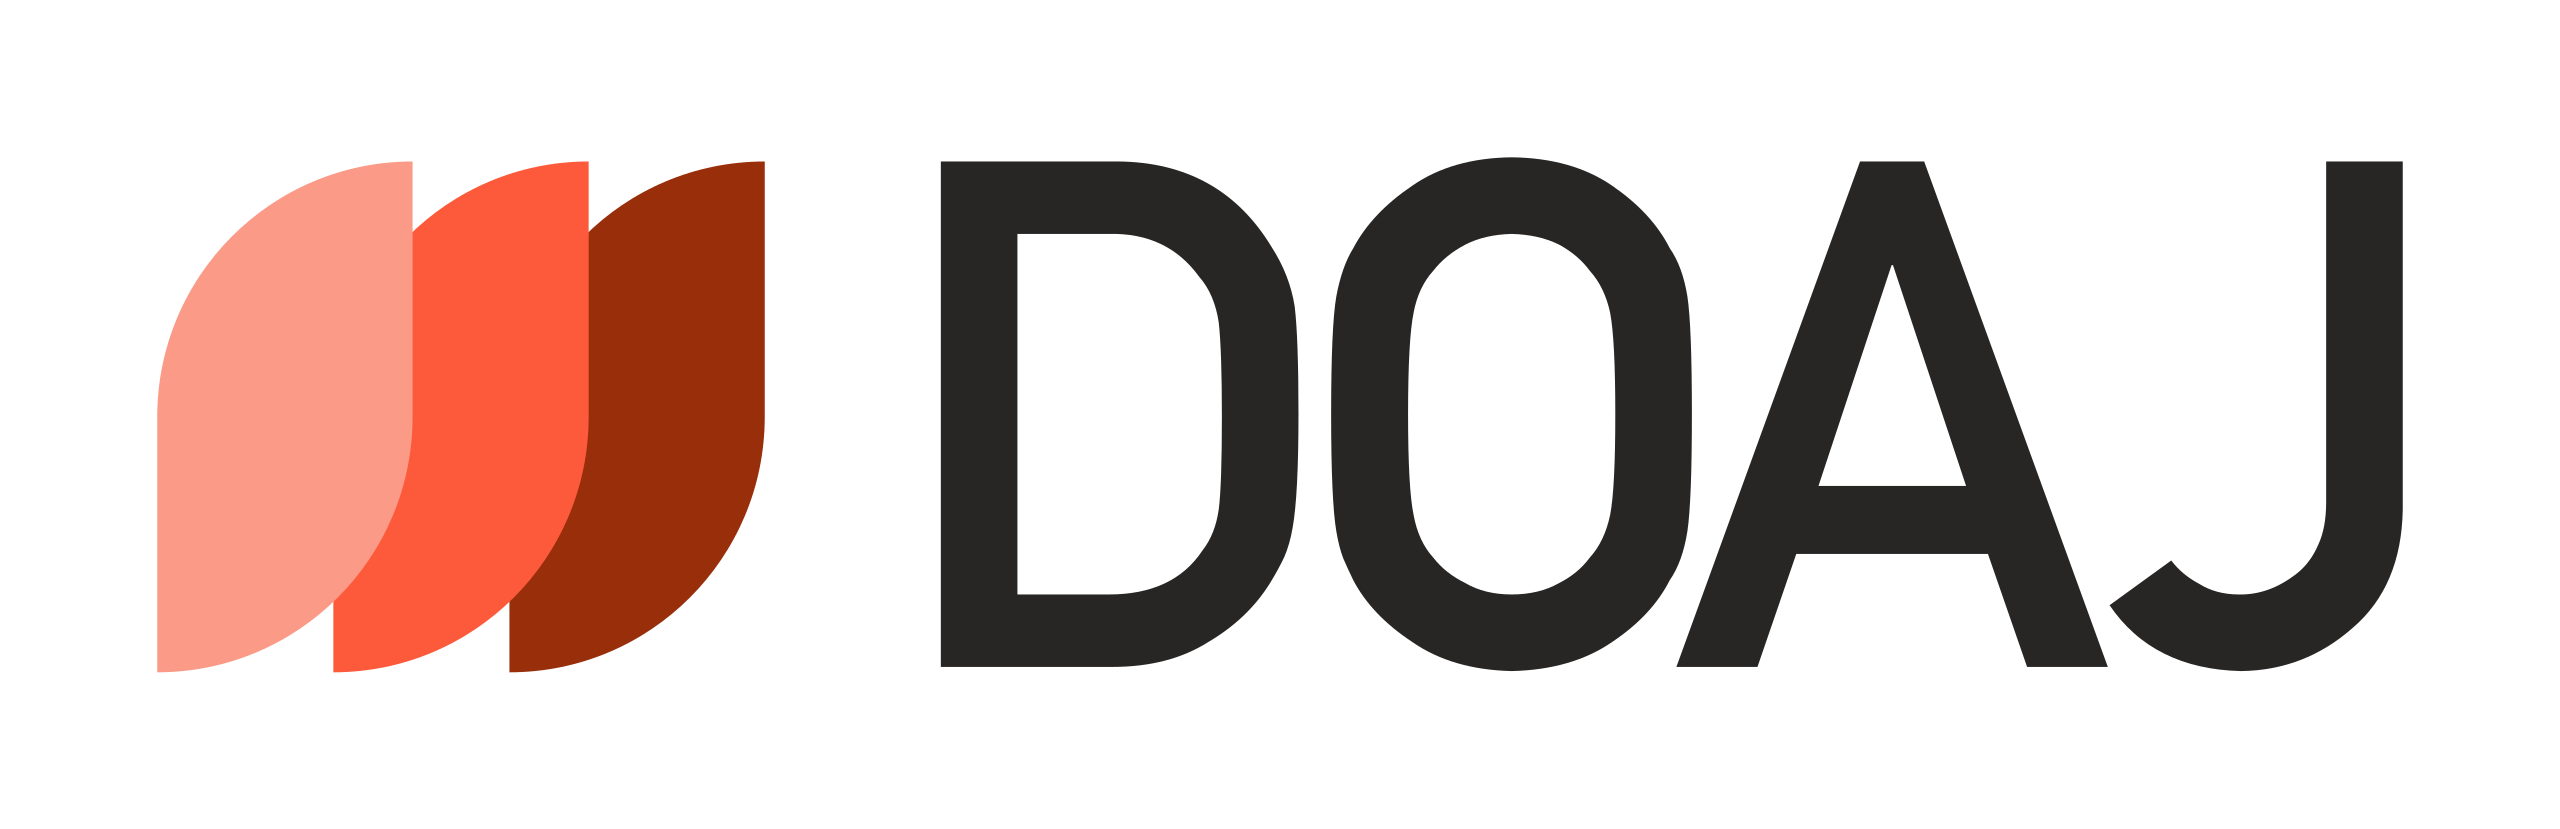 DOAJ_logo-colour.svg.png (64 KB)